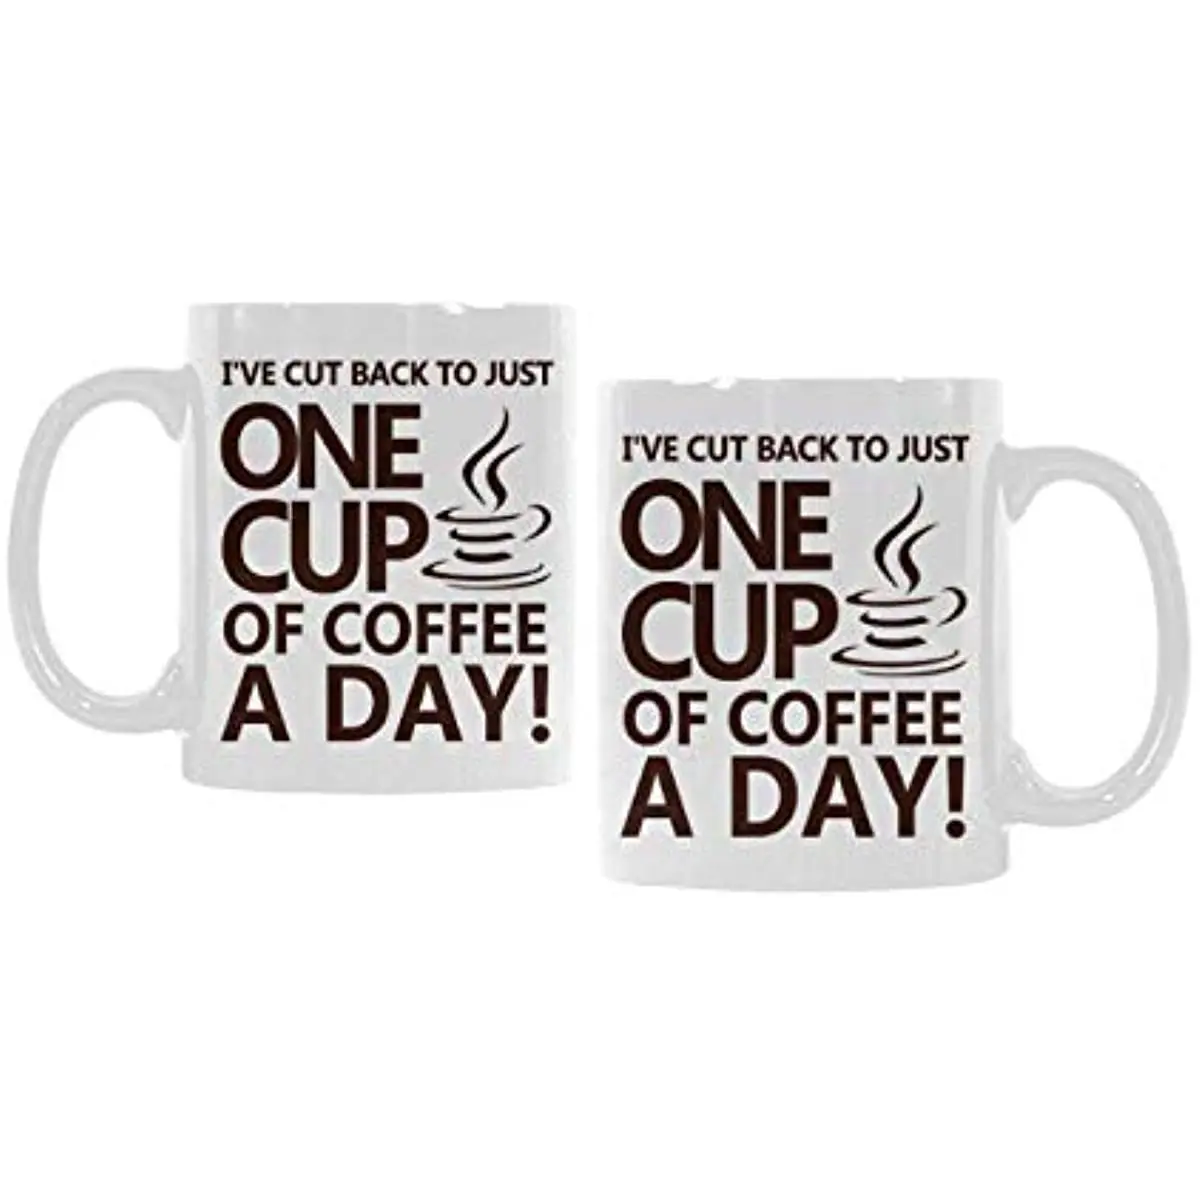 

Забавная Life кружка-я режут только одну чашку кофе в день белая керамическая кофейная кружка 11 унций-стандартная кофейная чашка или чайная чашка